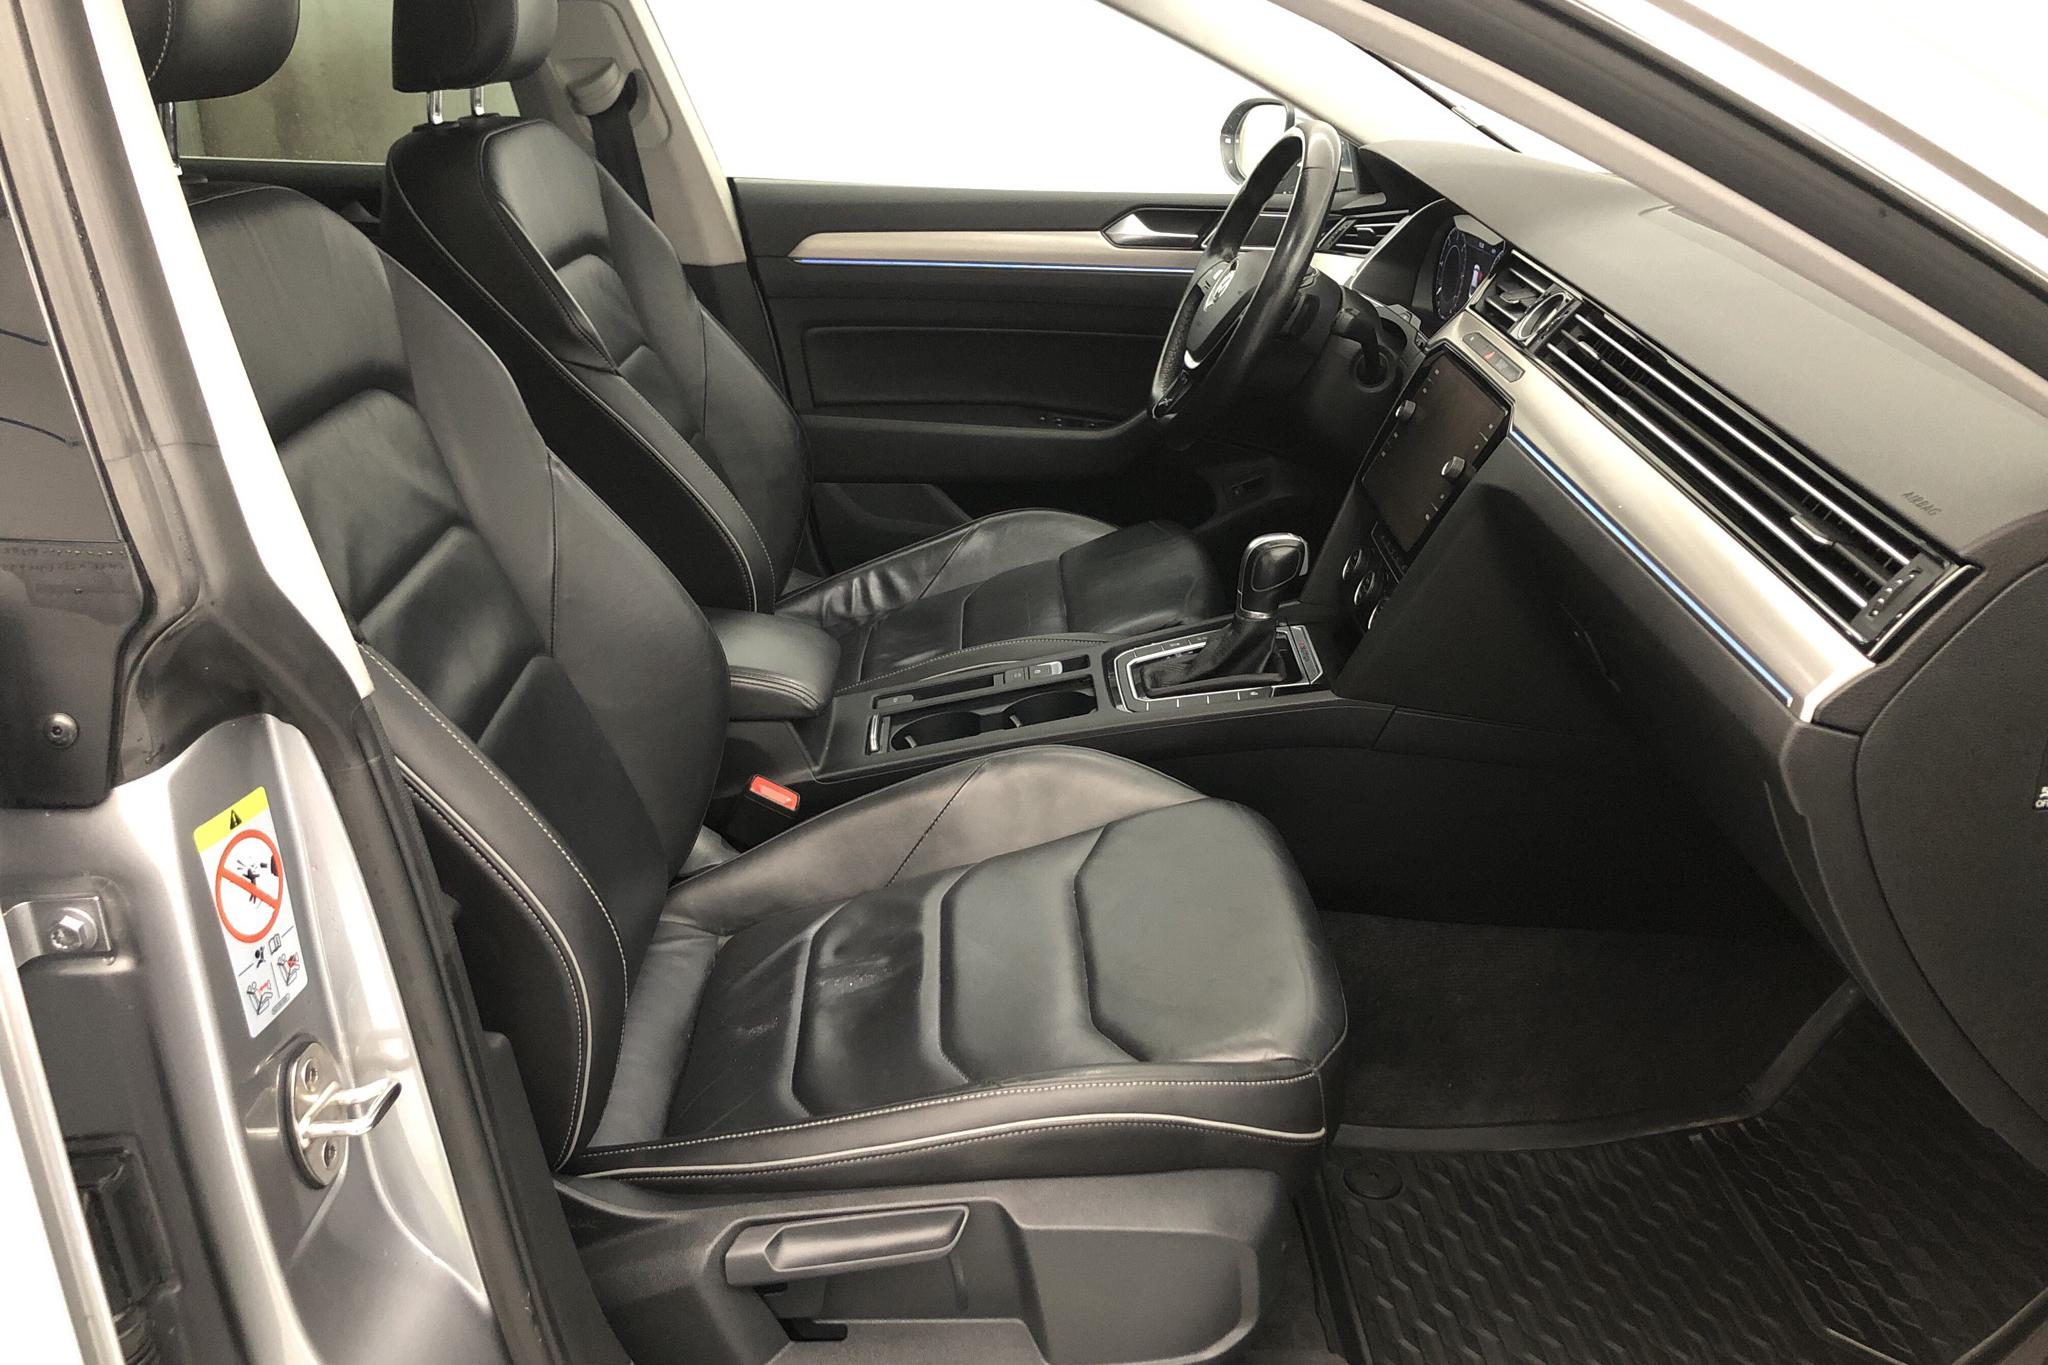 VW Arteon 2.0 TDI 4MOTION (240hk) - 104 370 km - Automatic - silver - 2017